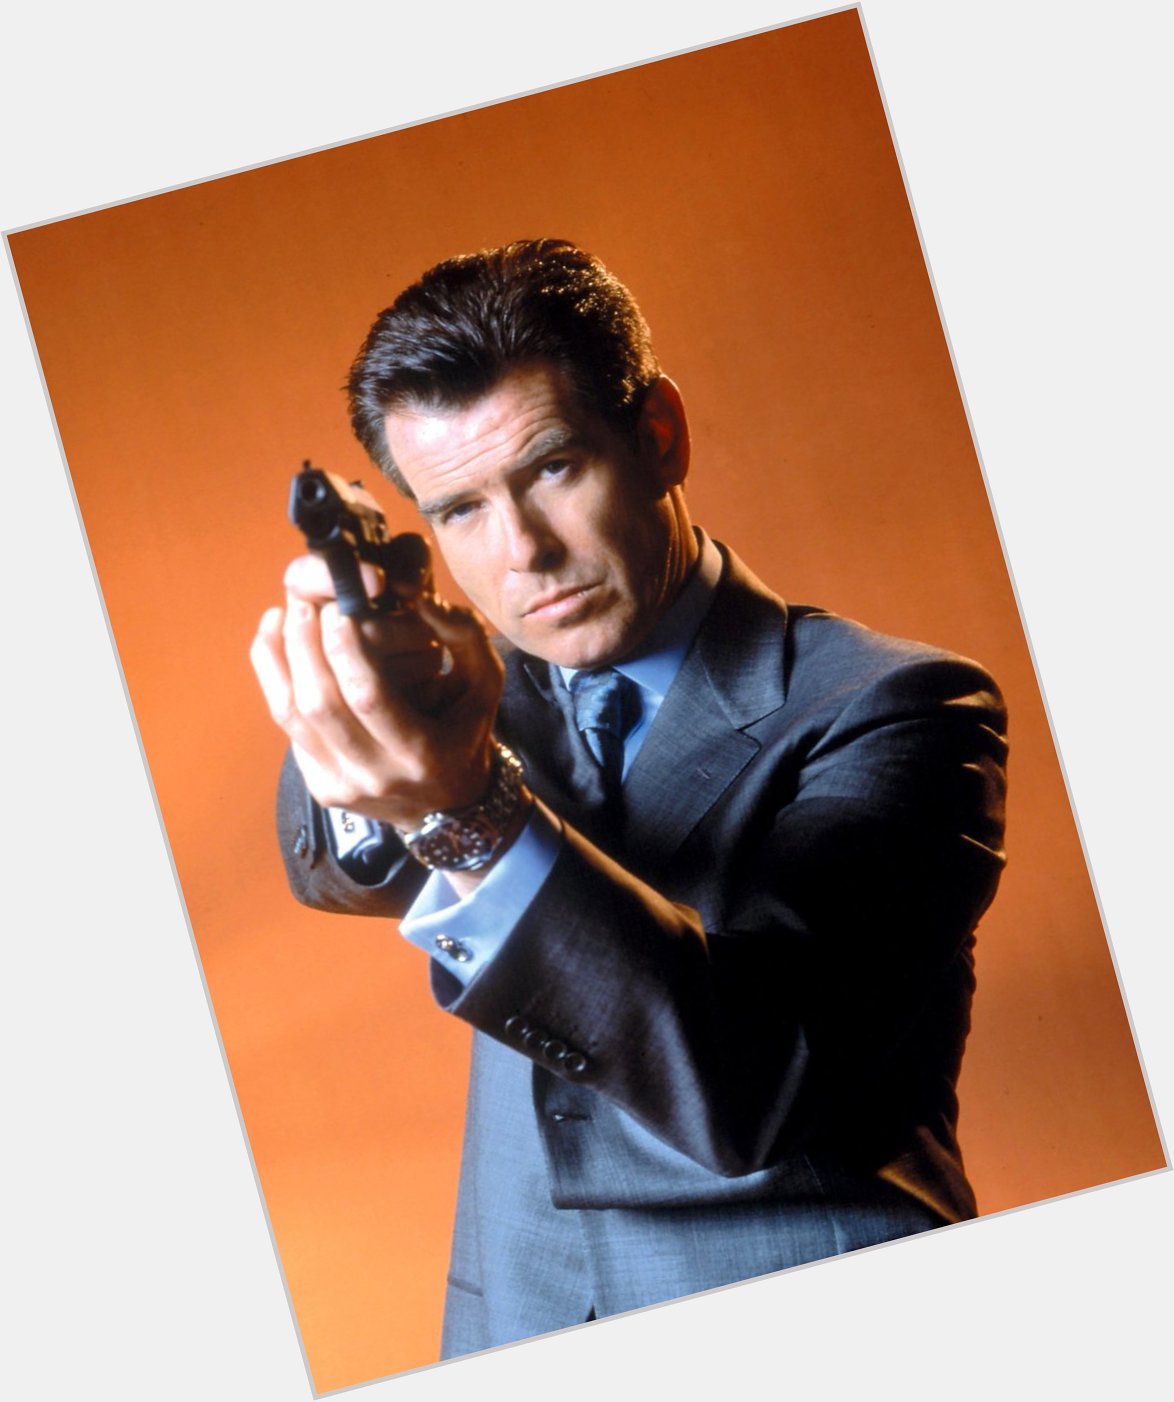 Happy Birthday 68th birthday to Pierce Brosnan the 5th James Bond.
Many happy returns. 